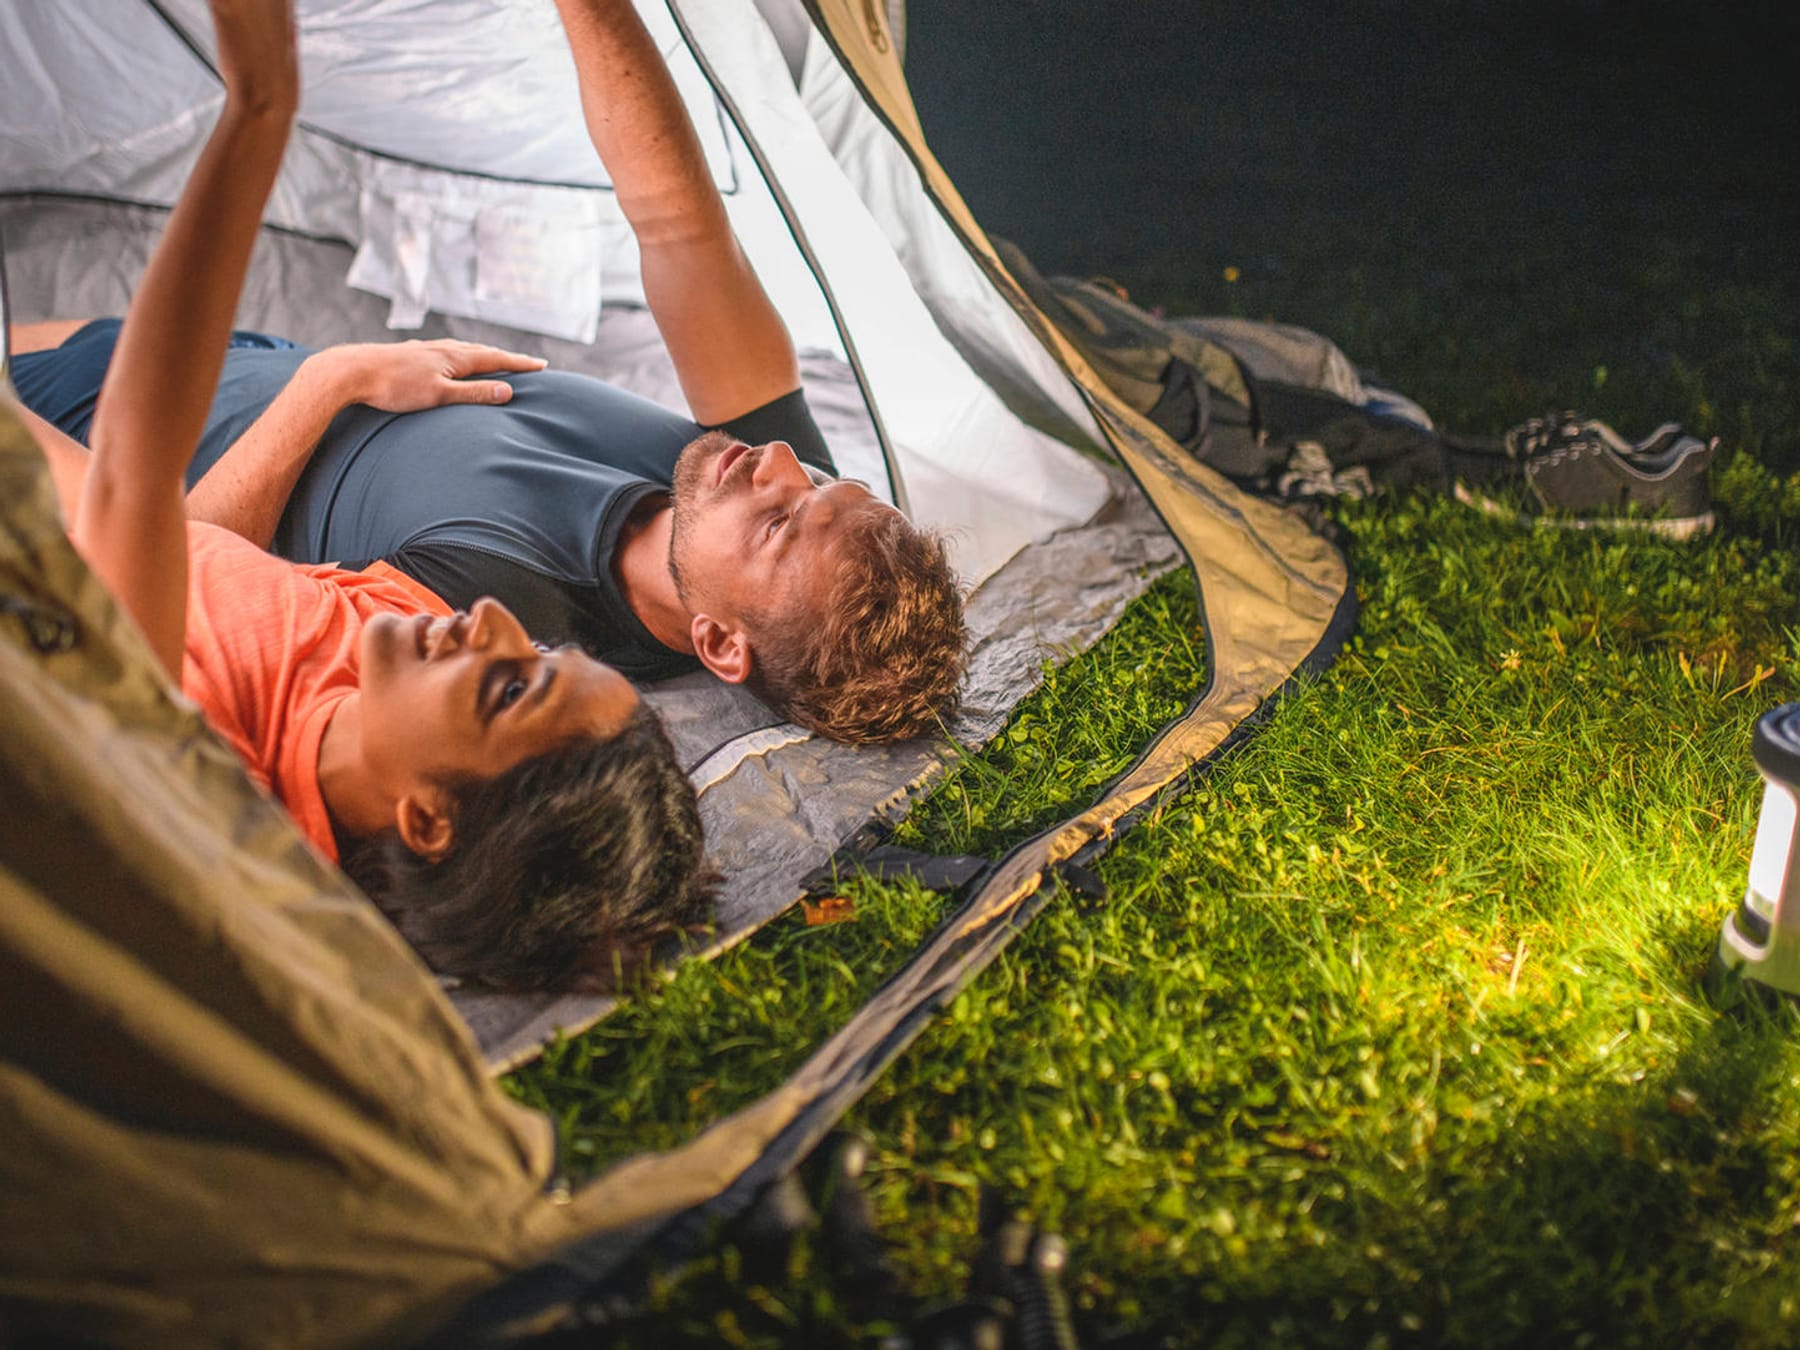 Campinglampen kaufen: Die richtige Beleuchtung für den Outdoor-Urlaub